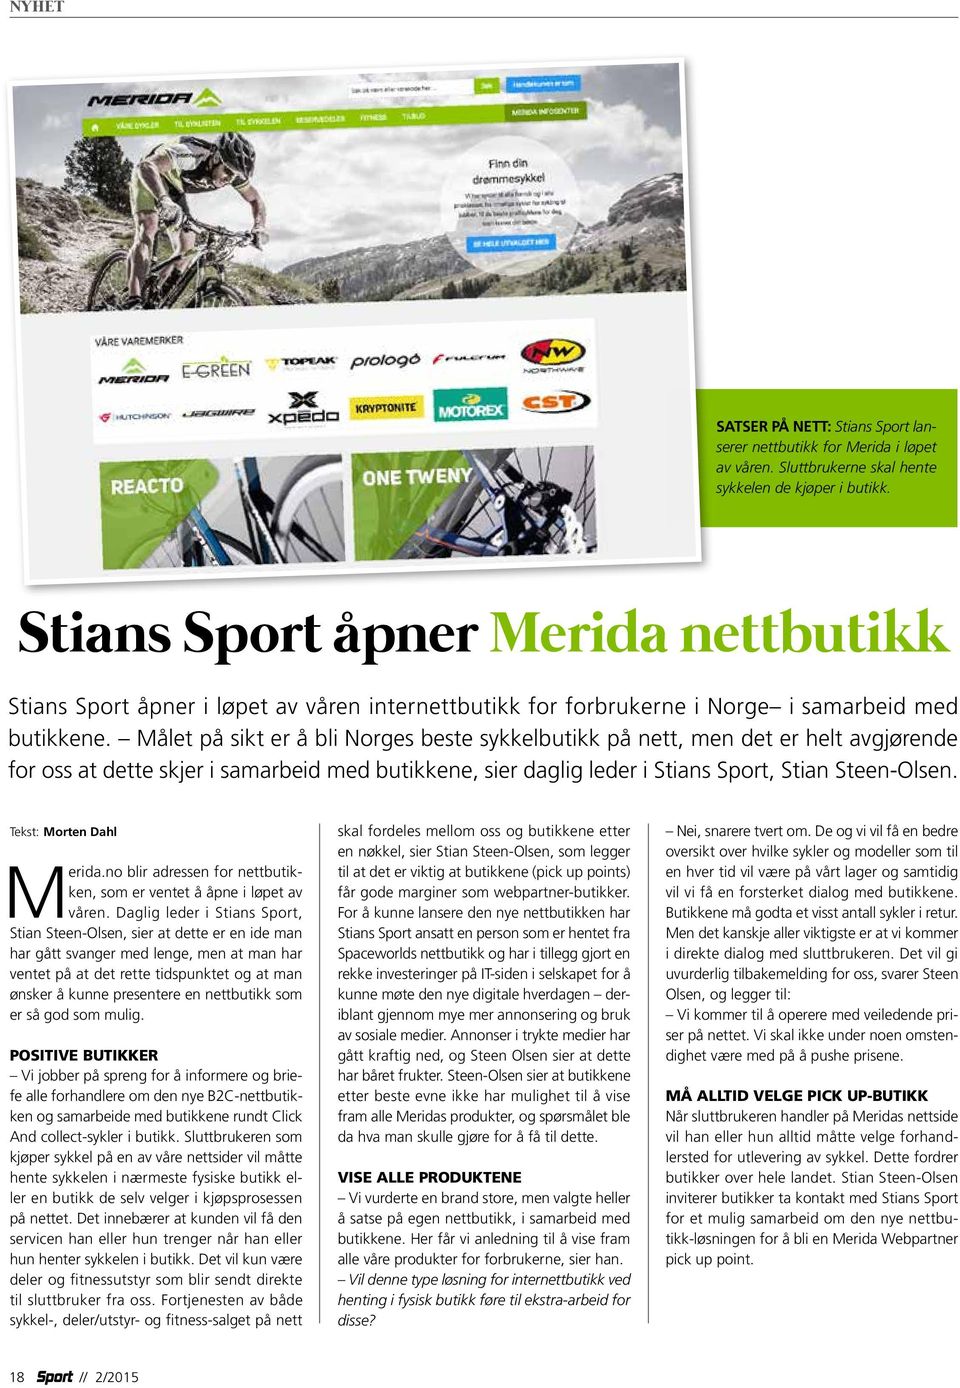 Målet på sikt er å bli Norges beste sykkelbutikk på nett, men det er helt avgjørende for oss at dette skjer i samarbeid med butikkene, sier daglig leder i Stians Sport, Stian Steen-Olsen.